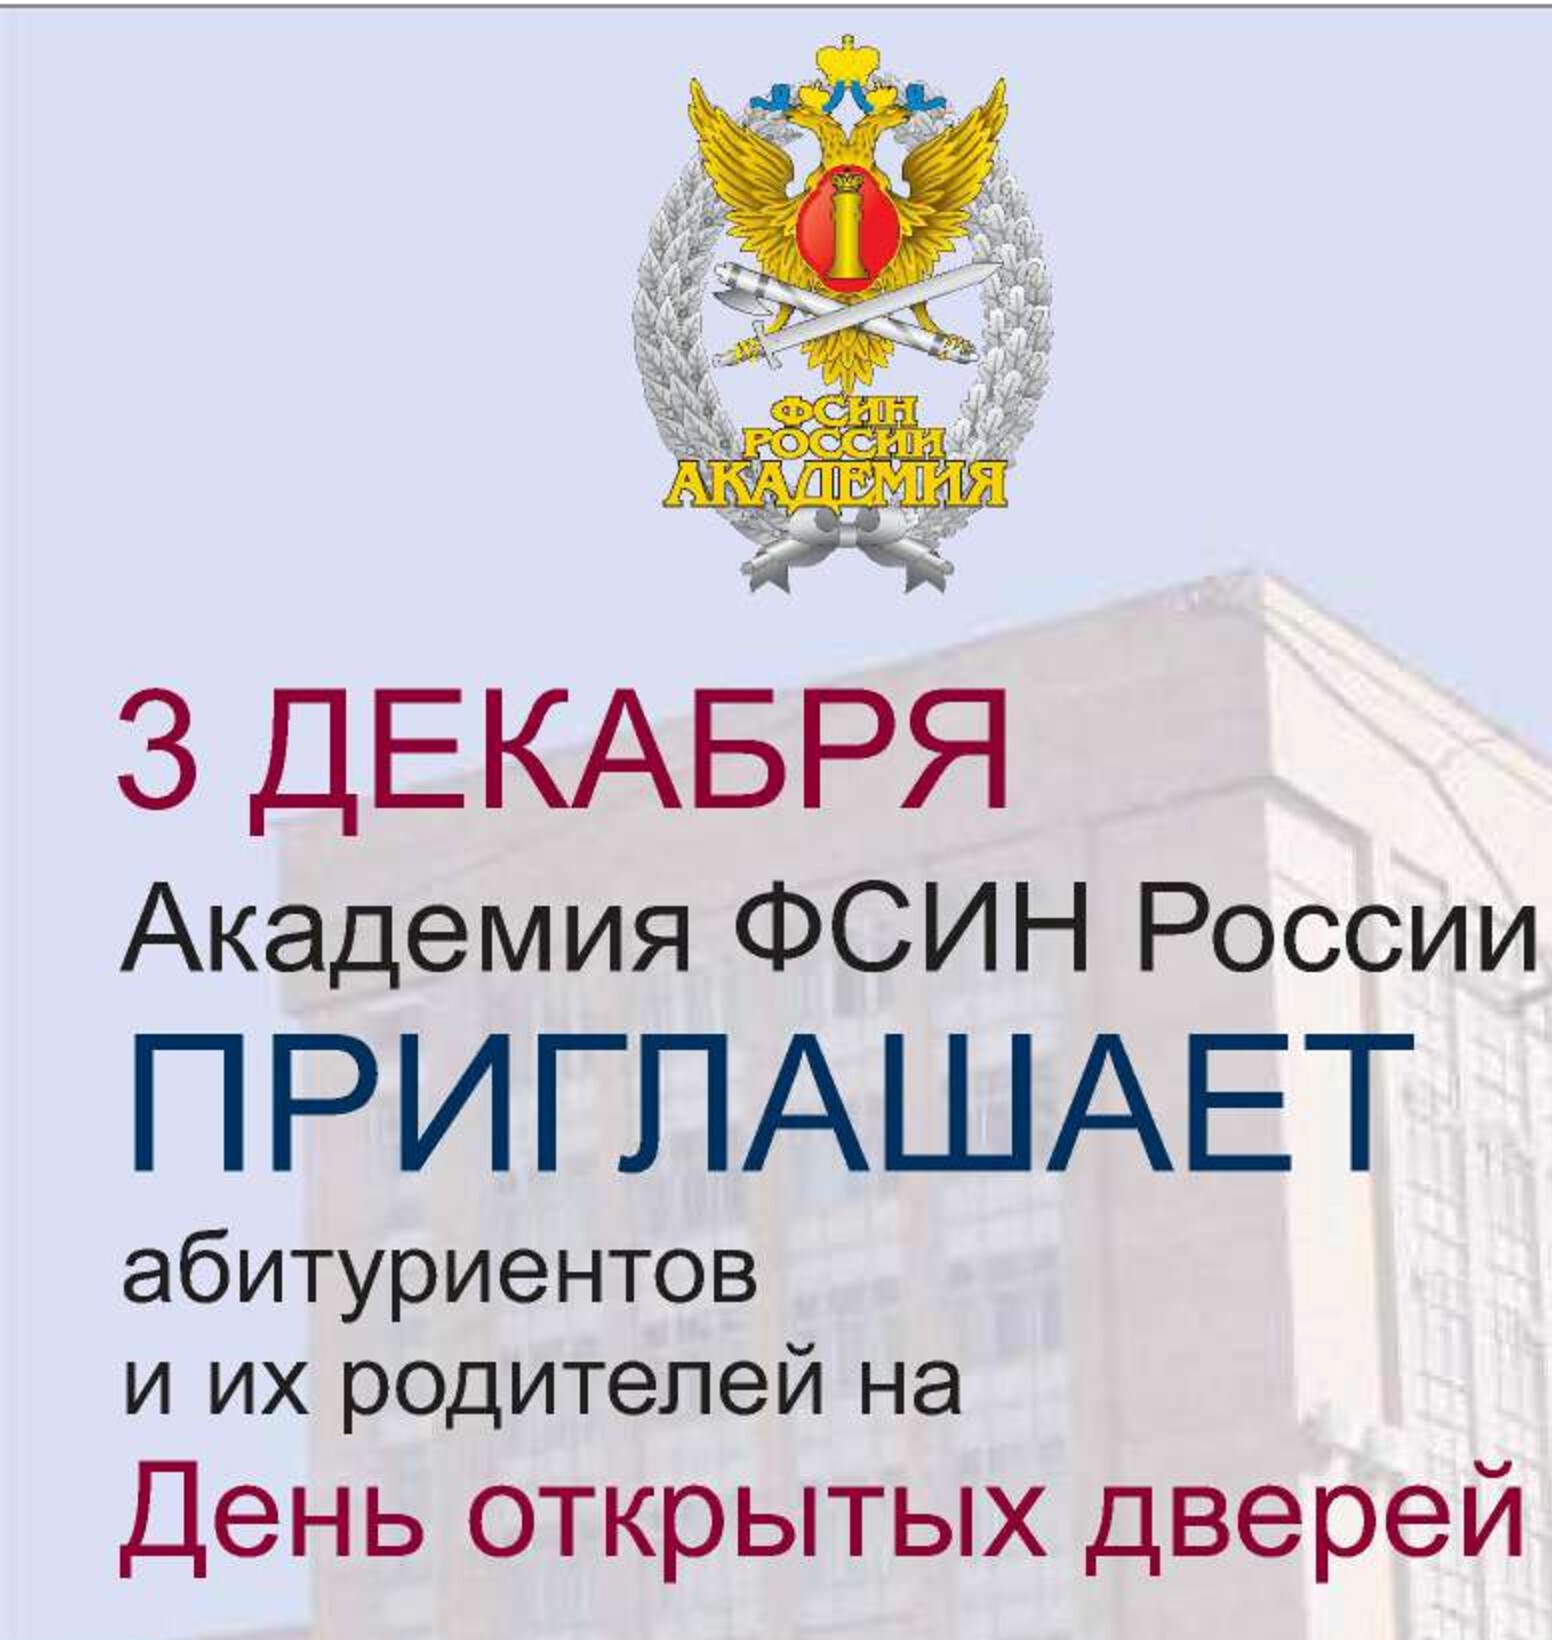 Академия права и управления ФСИН – одна из лучших вузов страны.